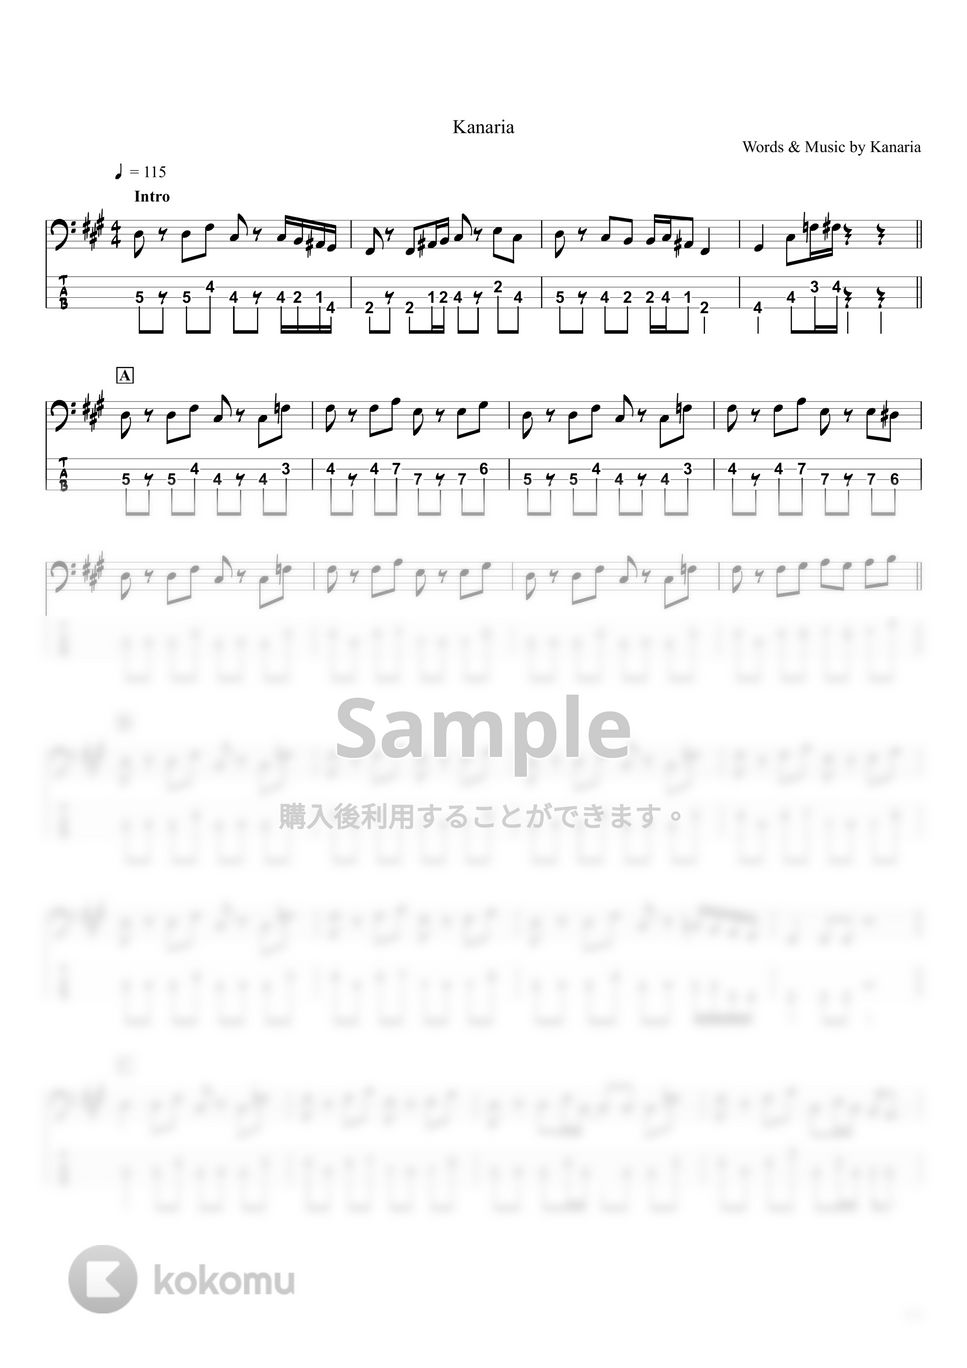 Kanaria - 酔いどれ知らず (ベースTAB譜☆4弦ベース対応) by swbass